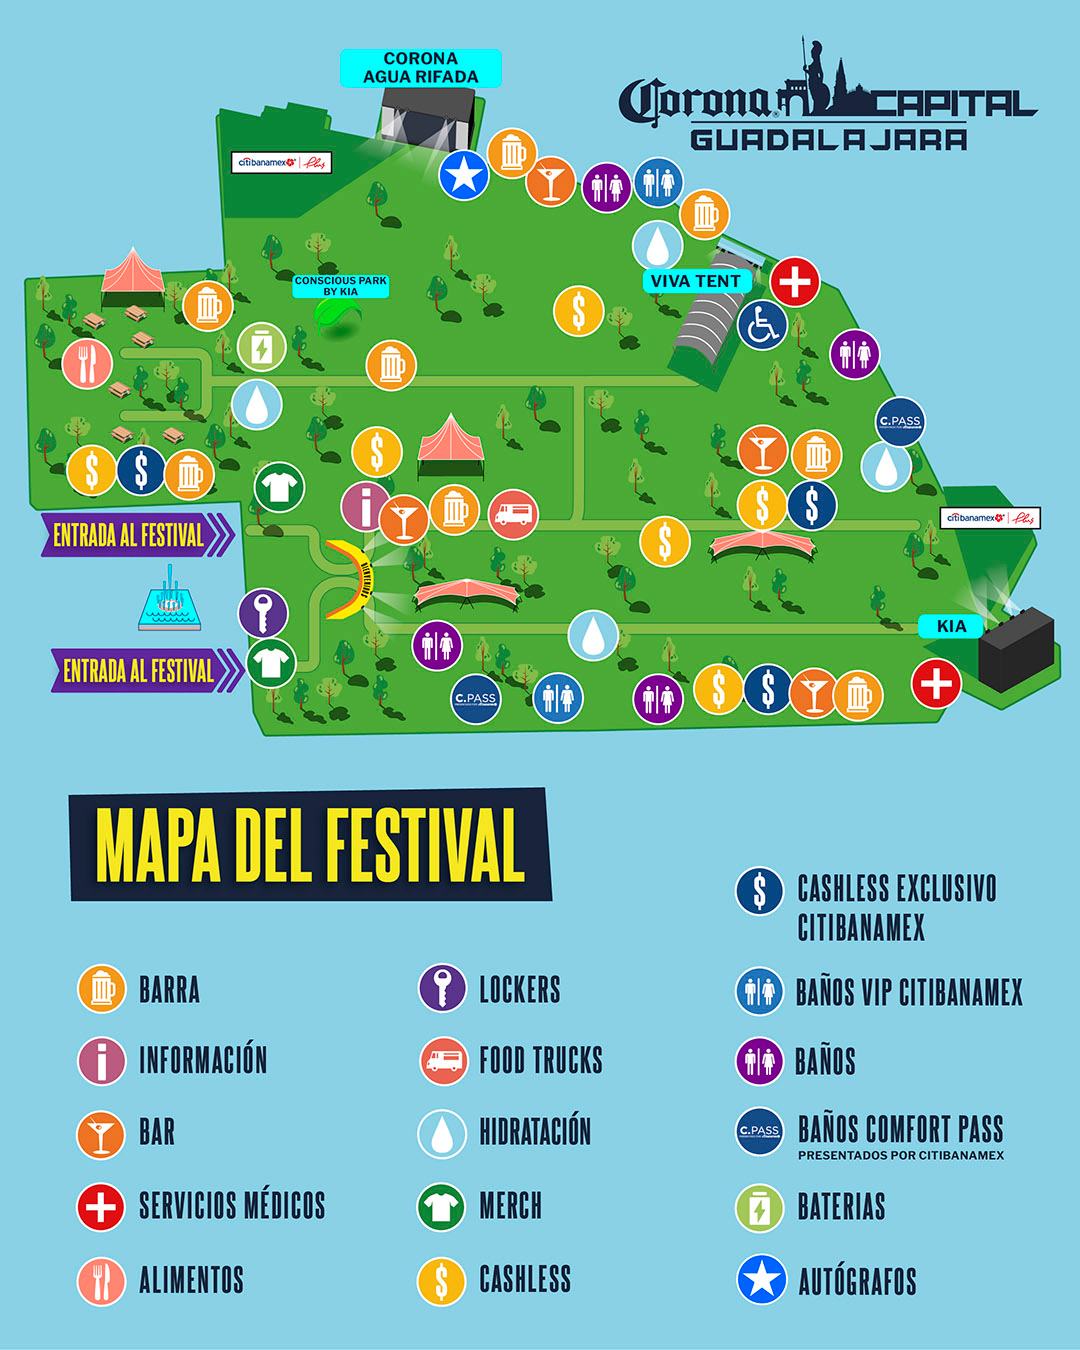 Corona-Capital-GDL-Mapa